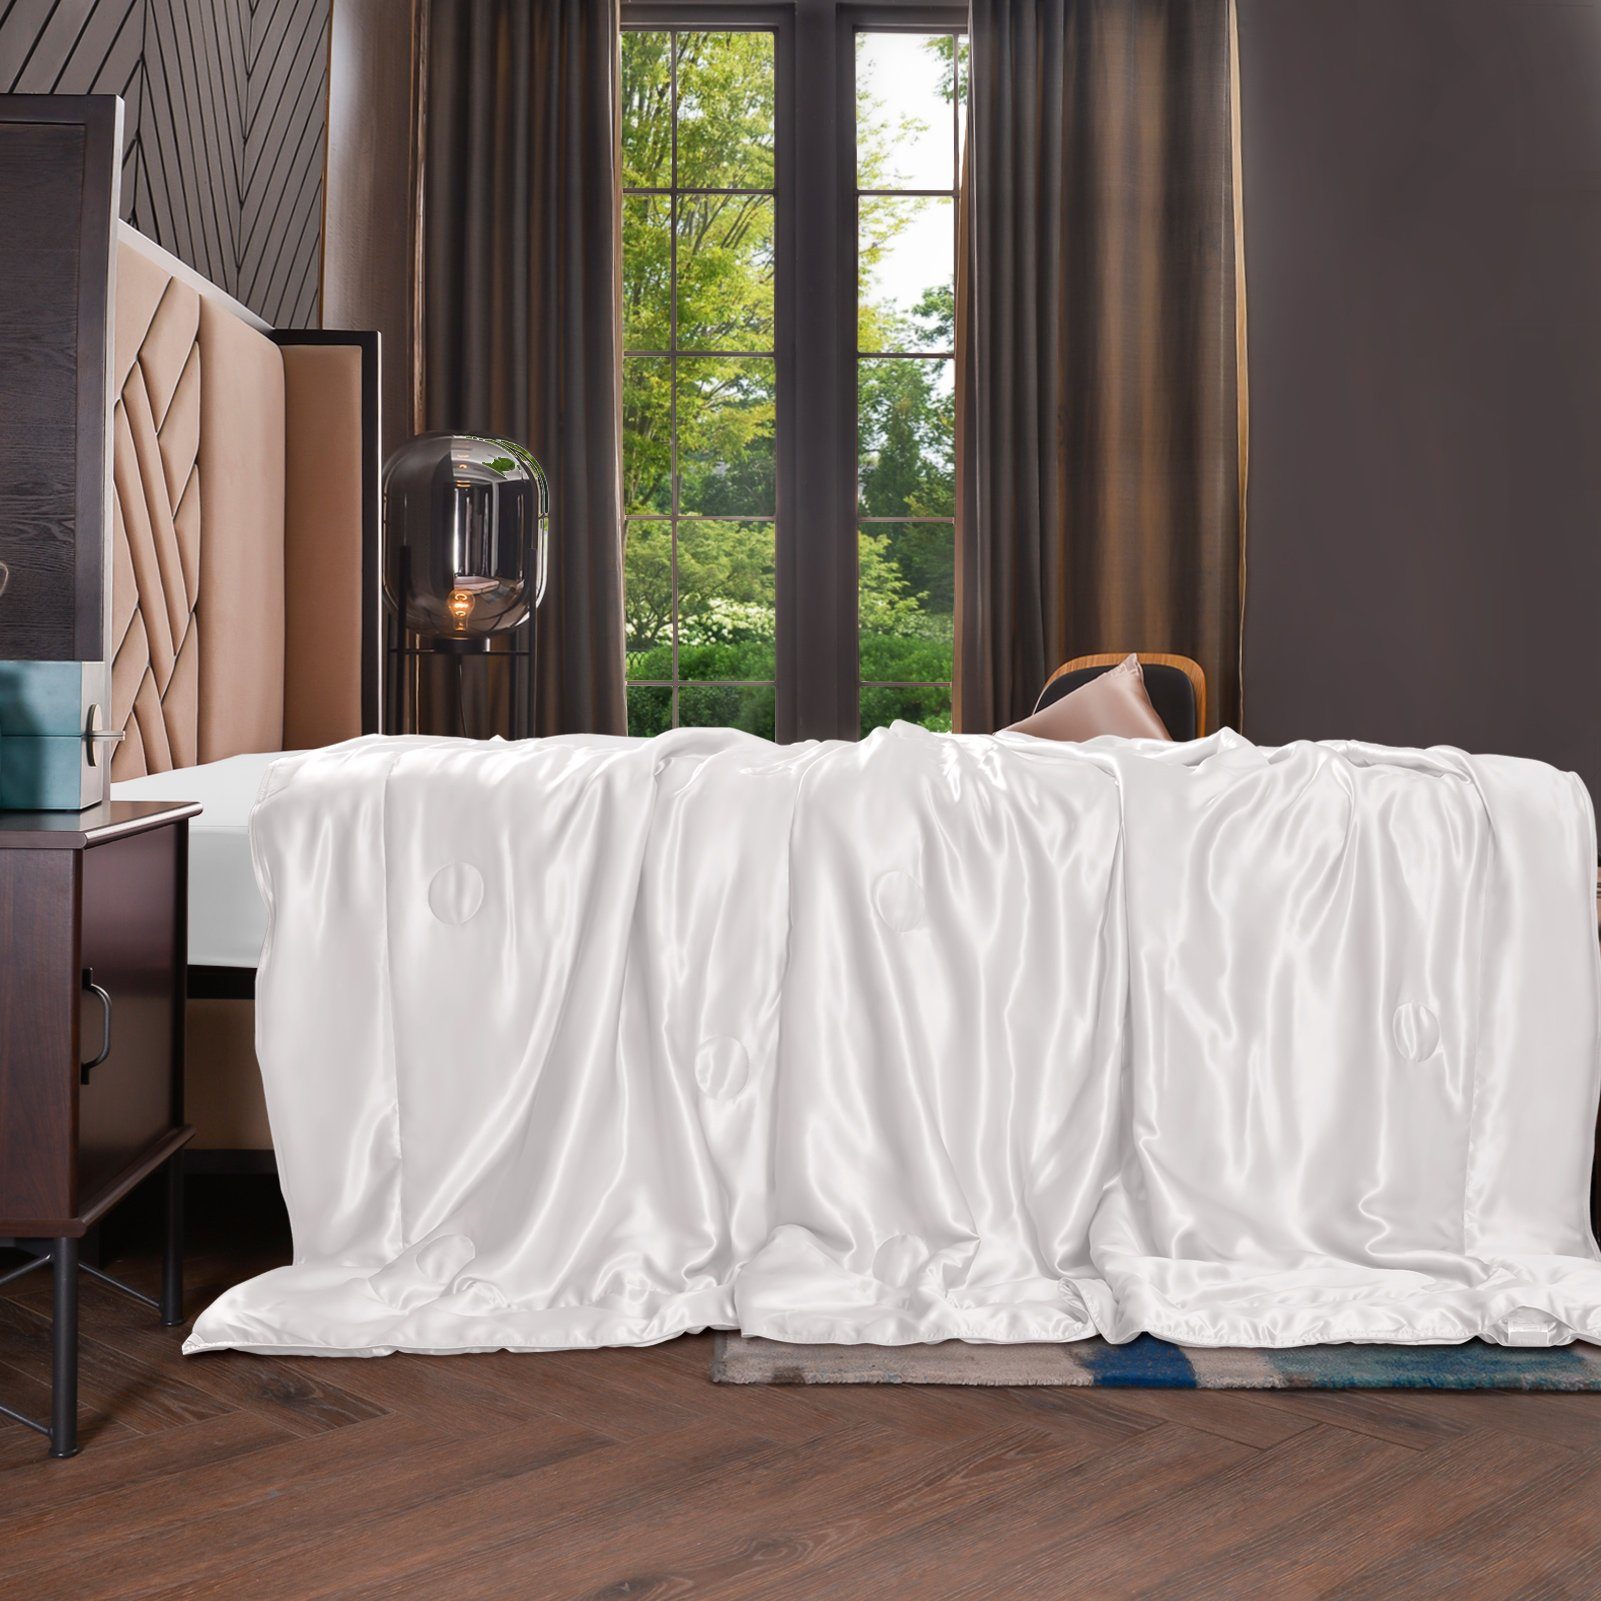 Sommerbettdecke, 135x180 cm, THXSILK, Füllung: 100% Seide, Bezug: 100% Seide, kühlend, leicht, hautfreundlich Weiß